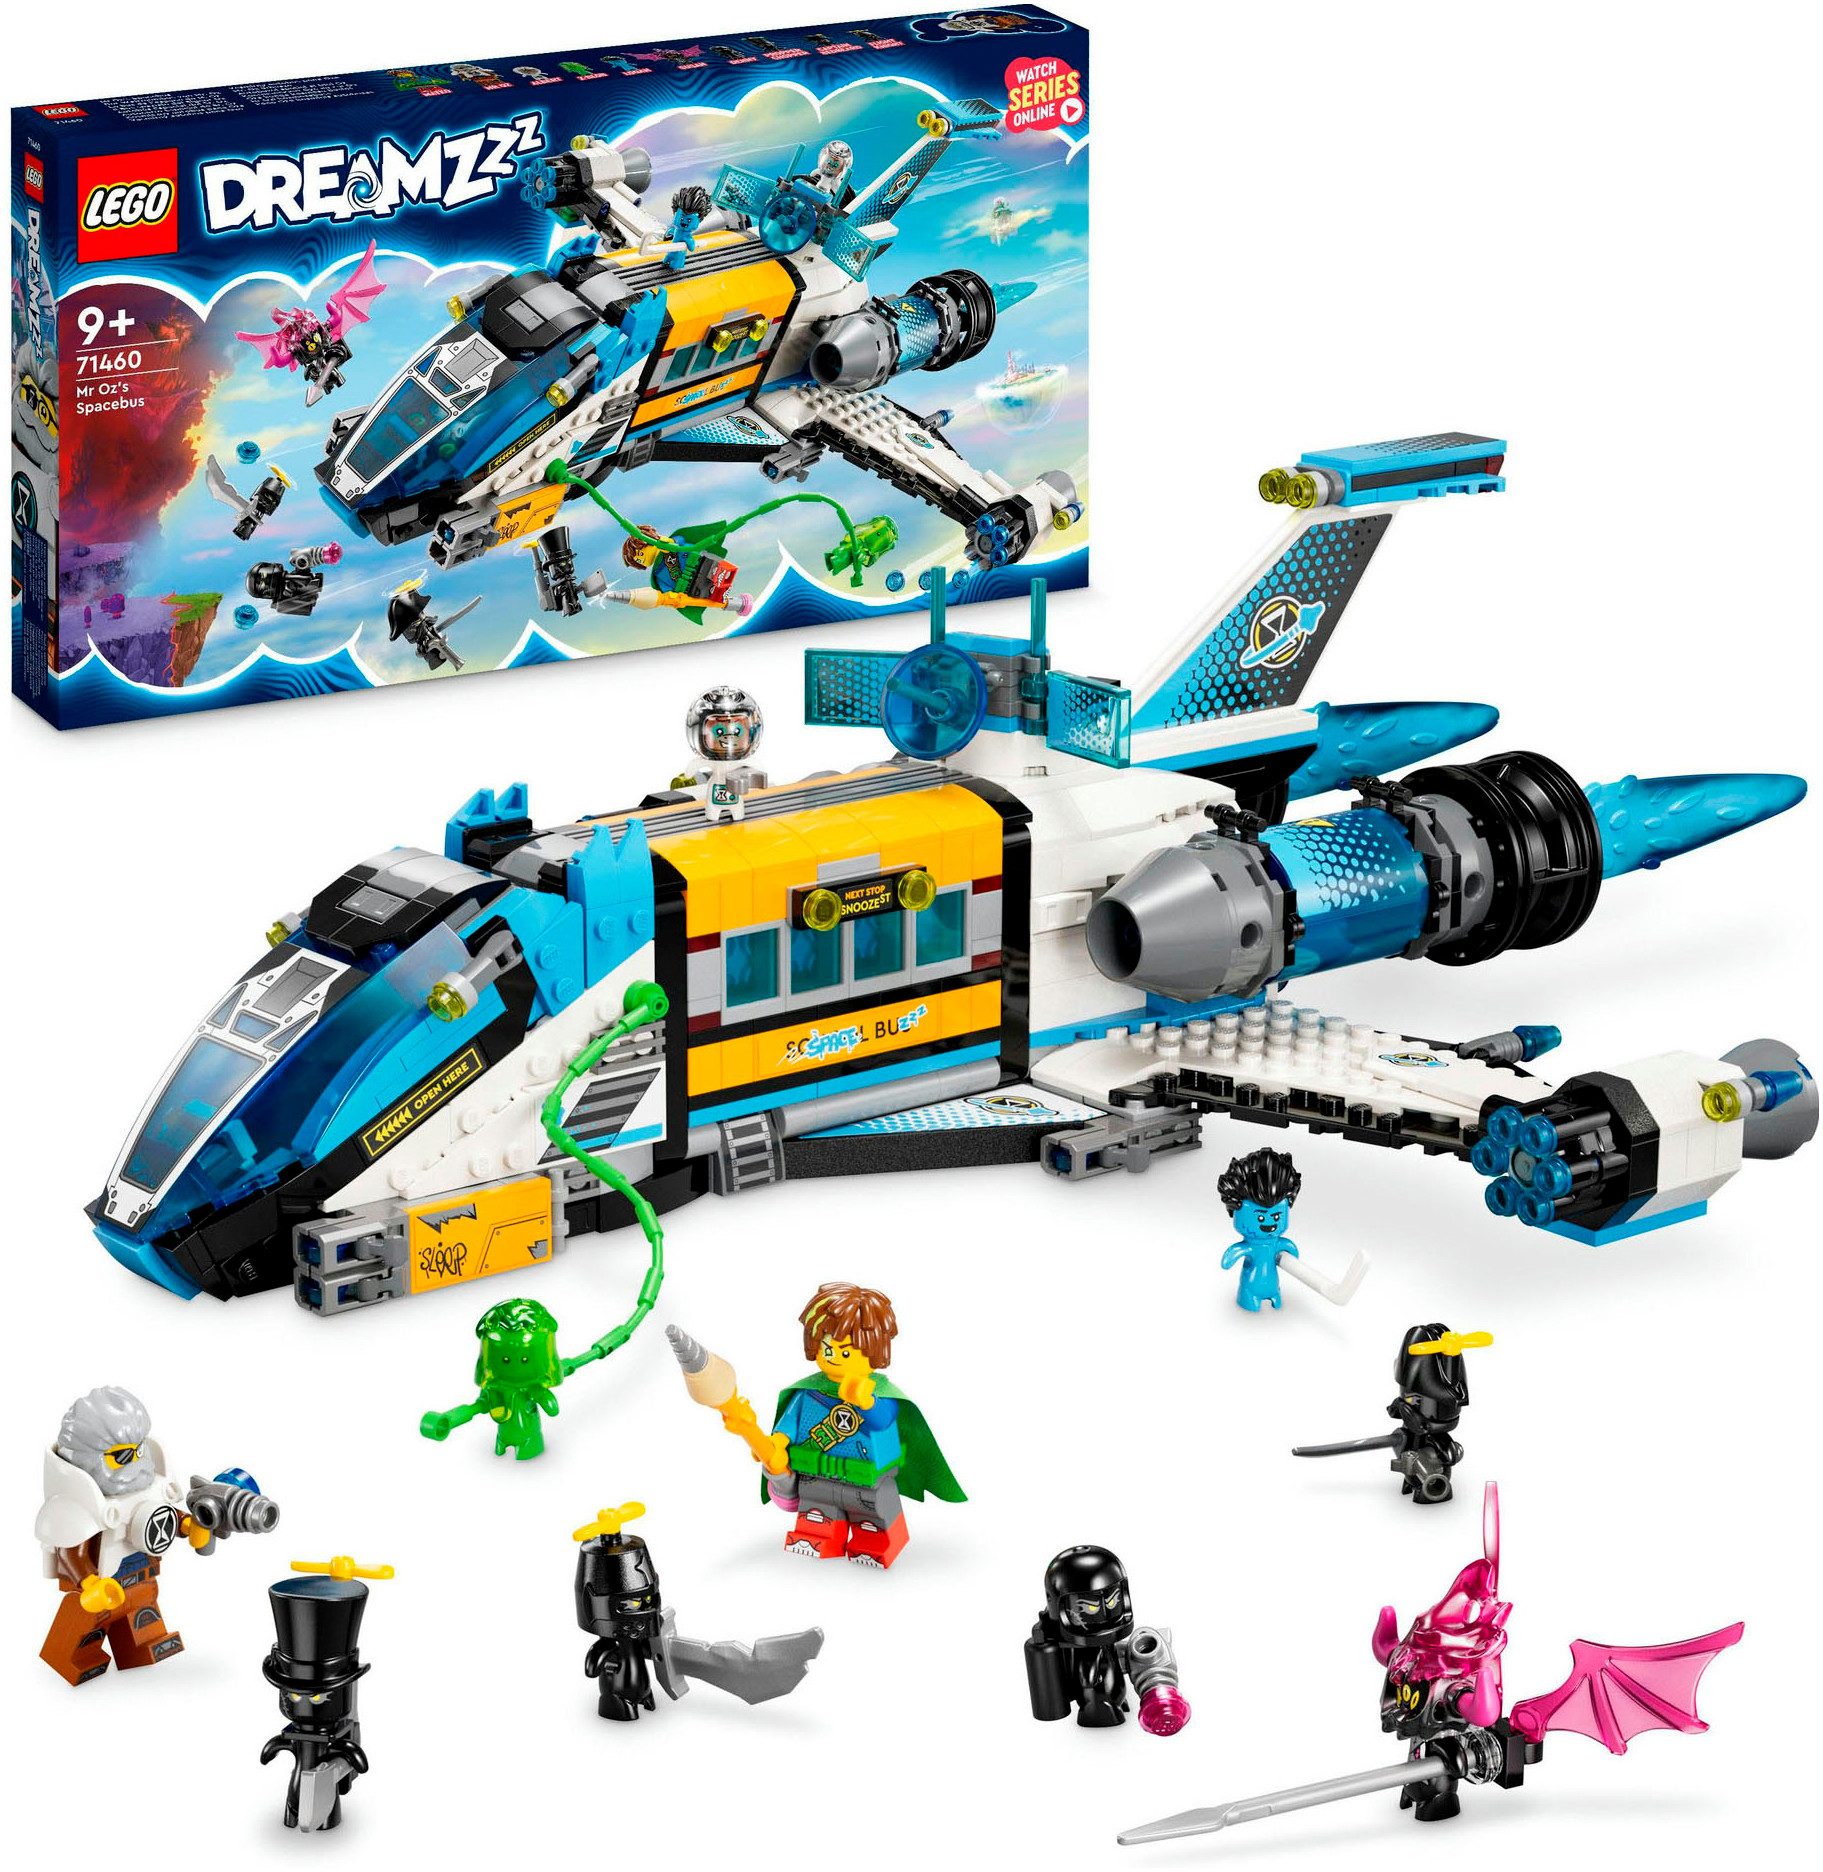 LEGO® Konstruktionsspielsteine Der Weltraumbus von Mr. Oz (71460), LEGO® DREAMZzz™, (878 St), Made in Europe